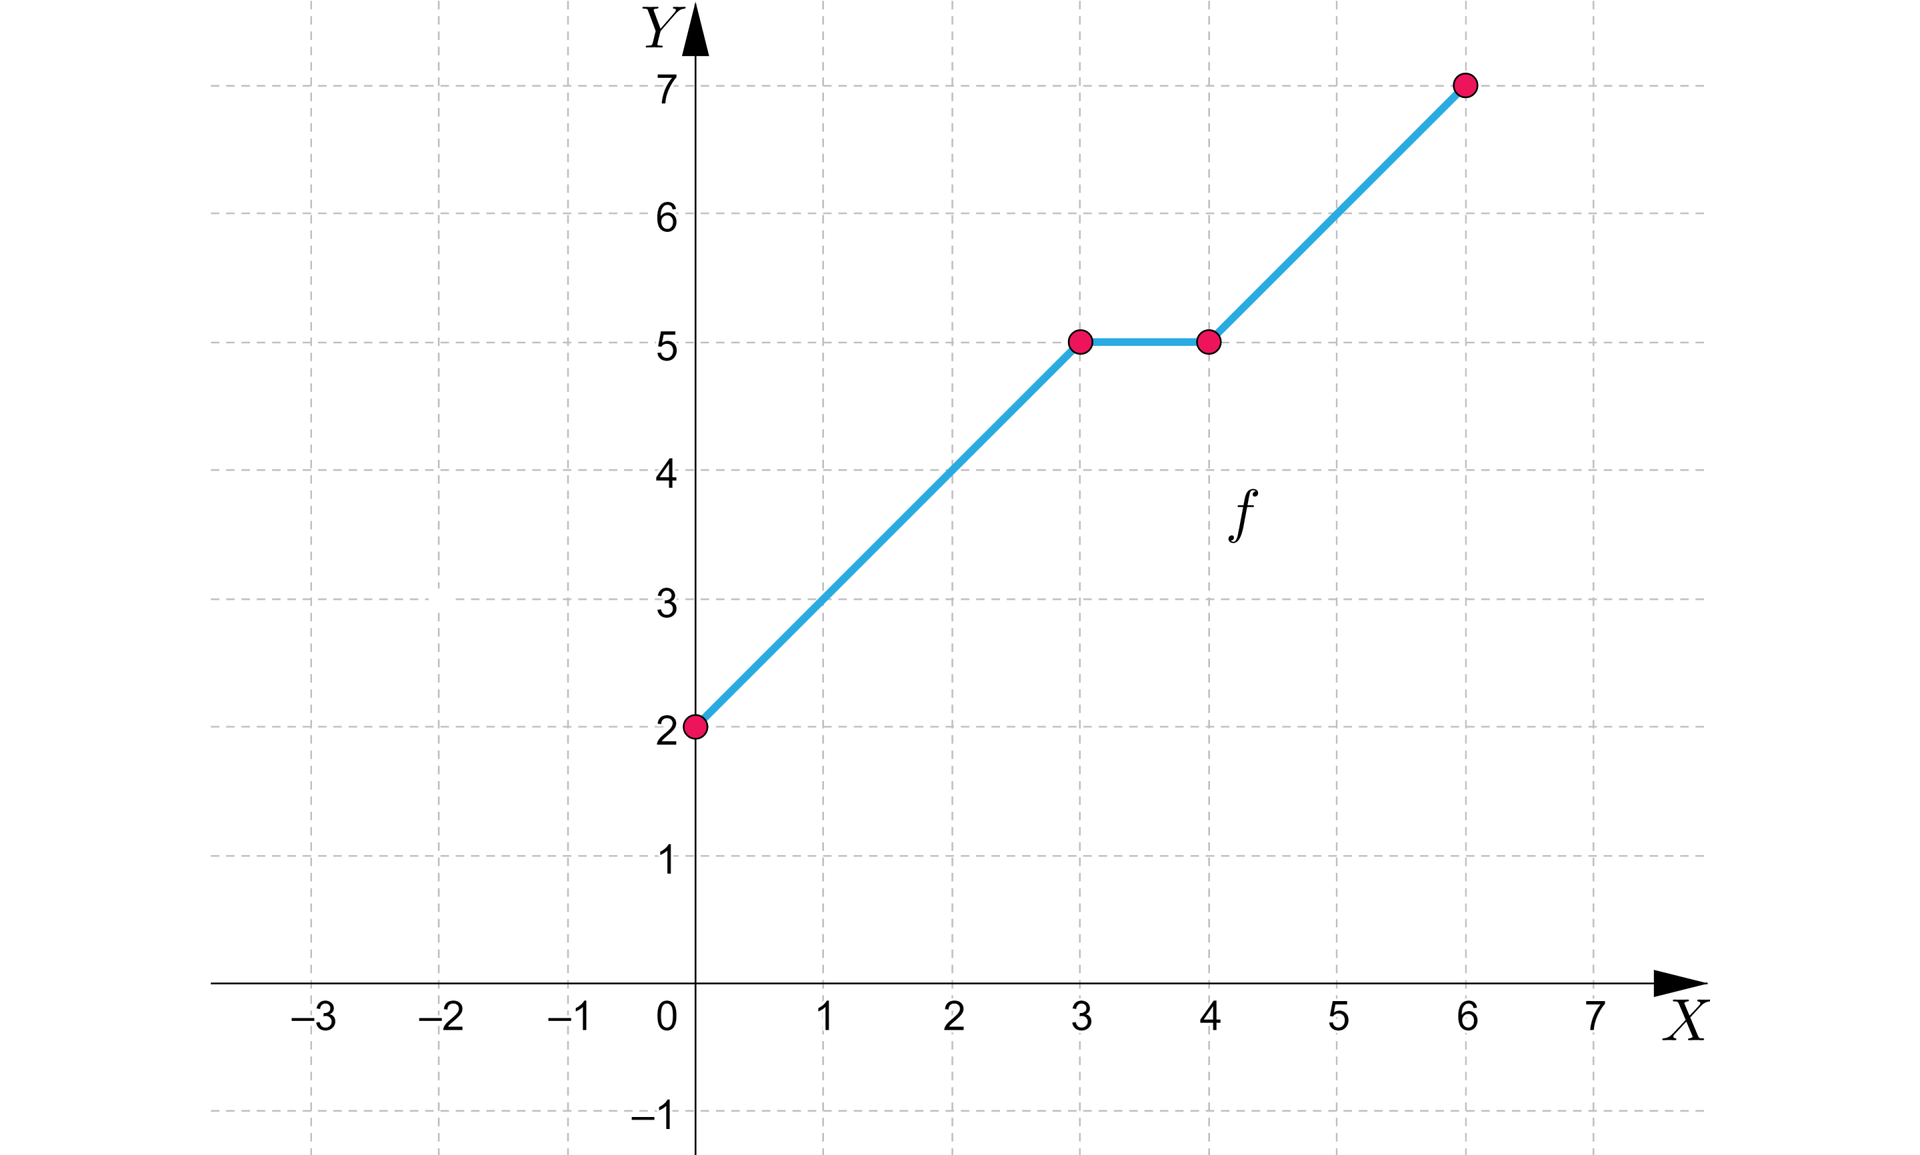 Ilustracja przedstawia układ współrzędnych z poziomą osią X od minus trzech do siedmiu oraz z pionową osią Y od minus jeden do siedmiu. Na płaszczyźnie zaznaczono wykres funkcji f składający się z trzech odcinków znajdujących się w pierwszej ćwiartce układu. Pierwsza część wykresu to ukośny odcinek o początku w punkcie 0;2 i końcu w punkcie 3;5. Punkt ten jest jednocześnie początkiem drugiego, poziomego odcinka o końcu w punkcie 4;5. Trzecia część wykresu to ukośny odcinek o początku w punkcie 4;5 i końcu w punkcie 6;7. Wszystkie końce odcinków należę do wykresu funkcji.